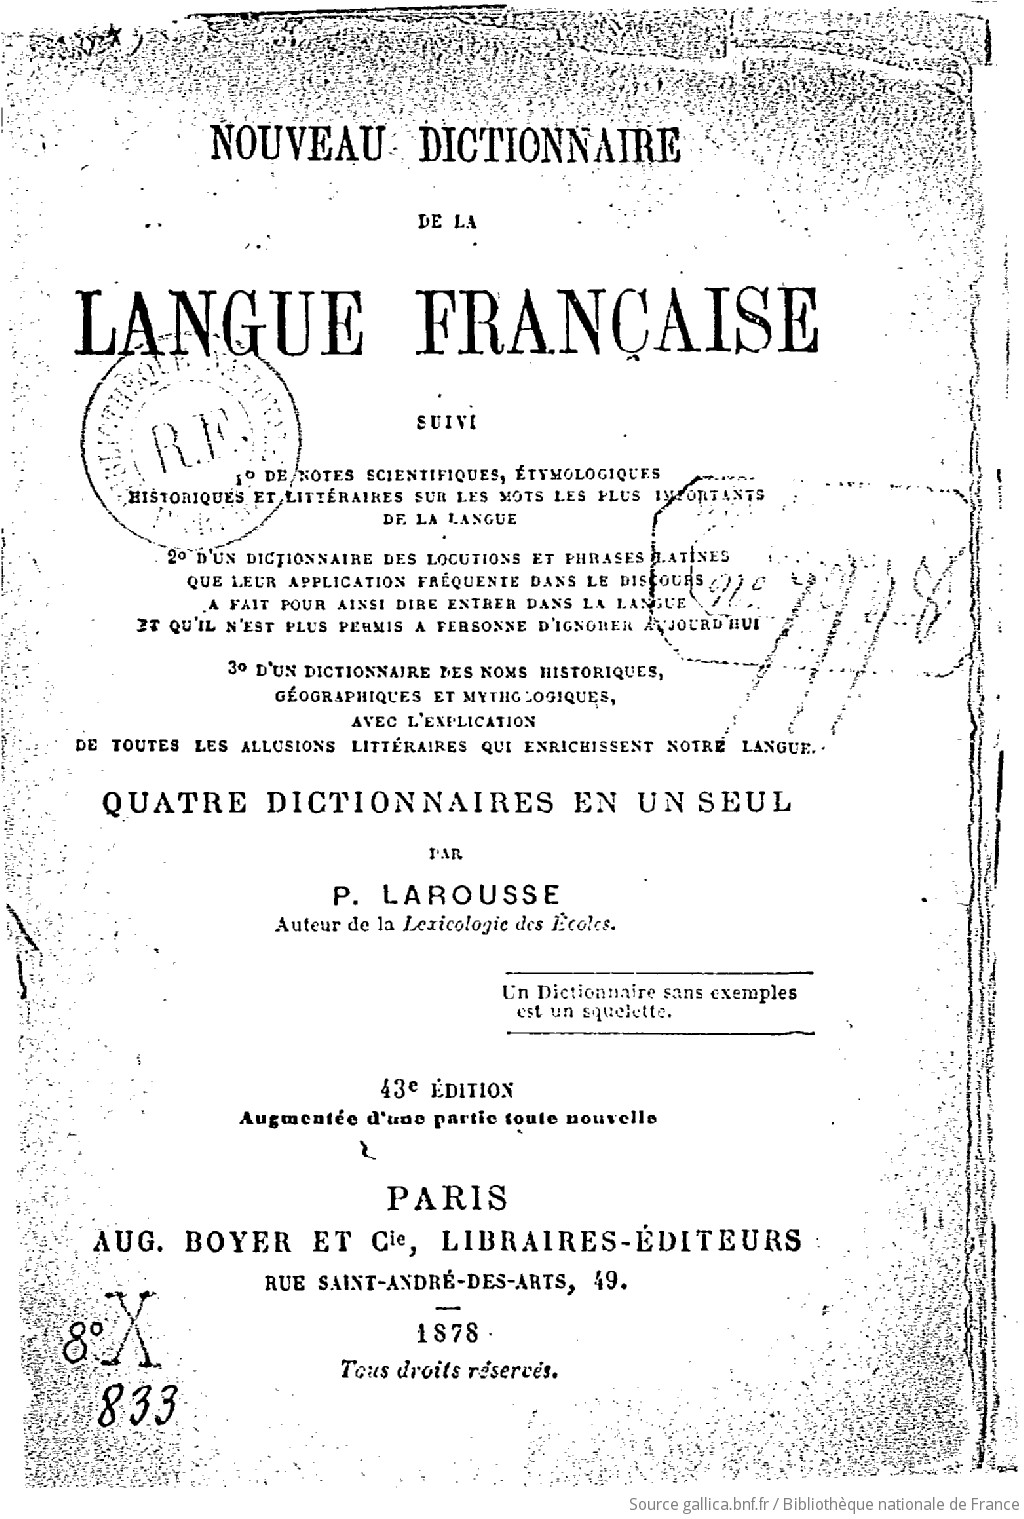 Nouveau dictionnaire de la langue française... : quatre dictionnaires en un seul (43e édition augmentée d'une partie toute nouvelle) / par P. Larousse,...